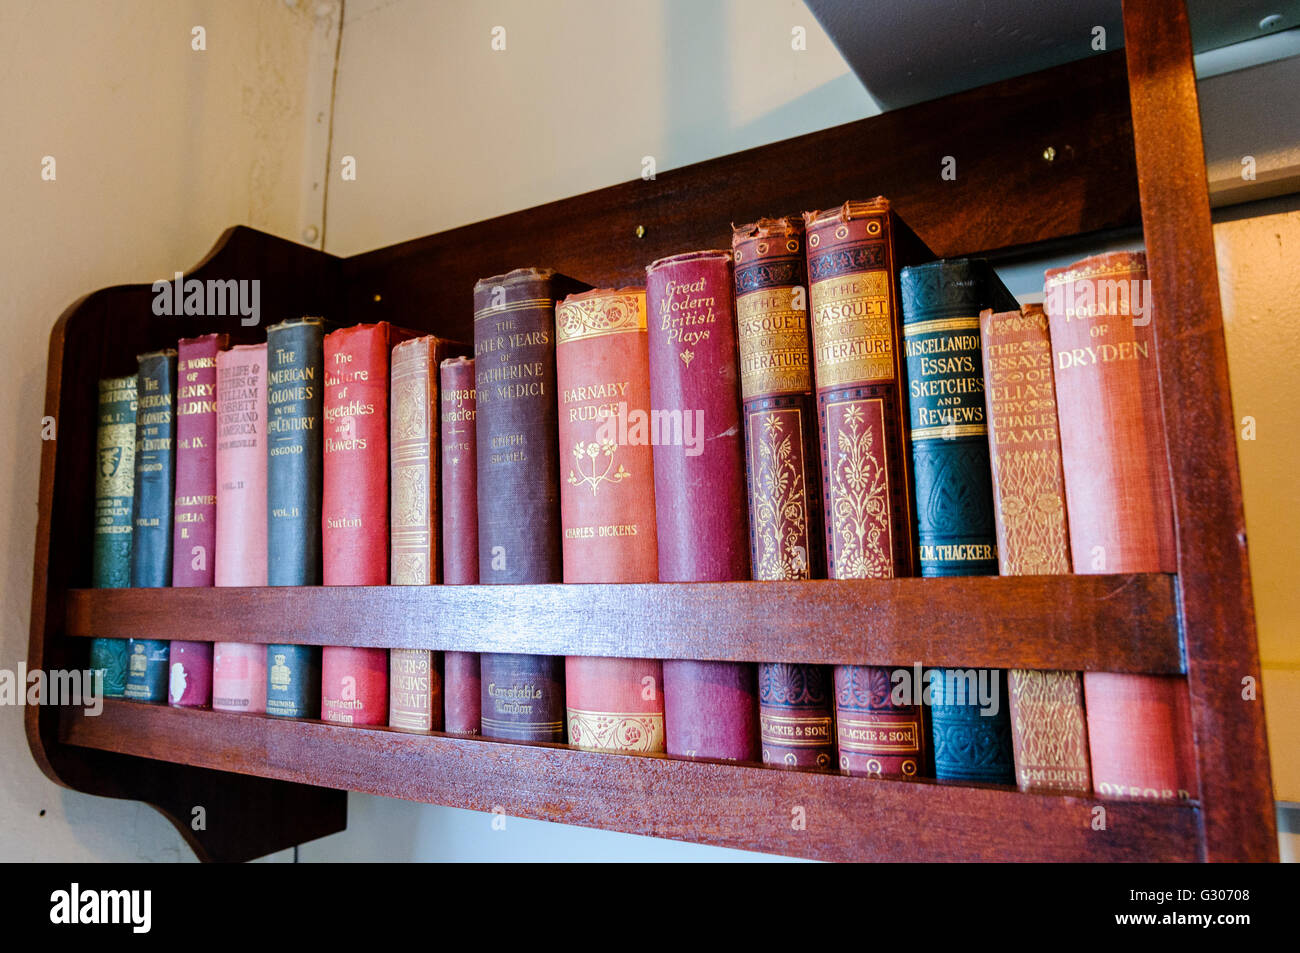 Pequeña estantería con libros antiguos de alrededor de 1900-1915, incluyendo Inglés clásicos de la literatura como Dickens y Thacker. Foto de stock